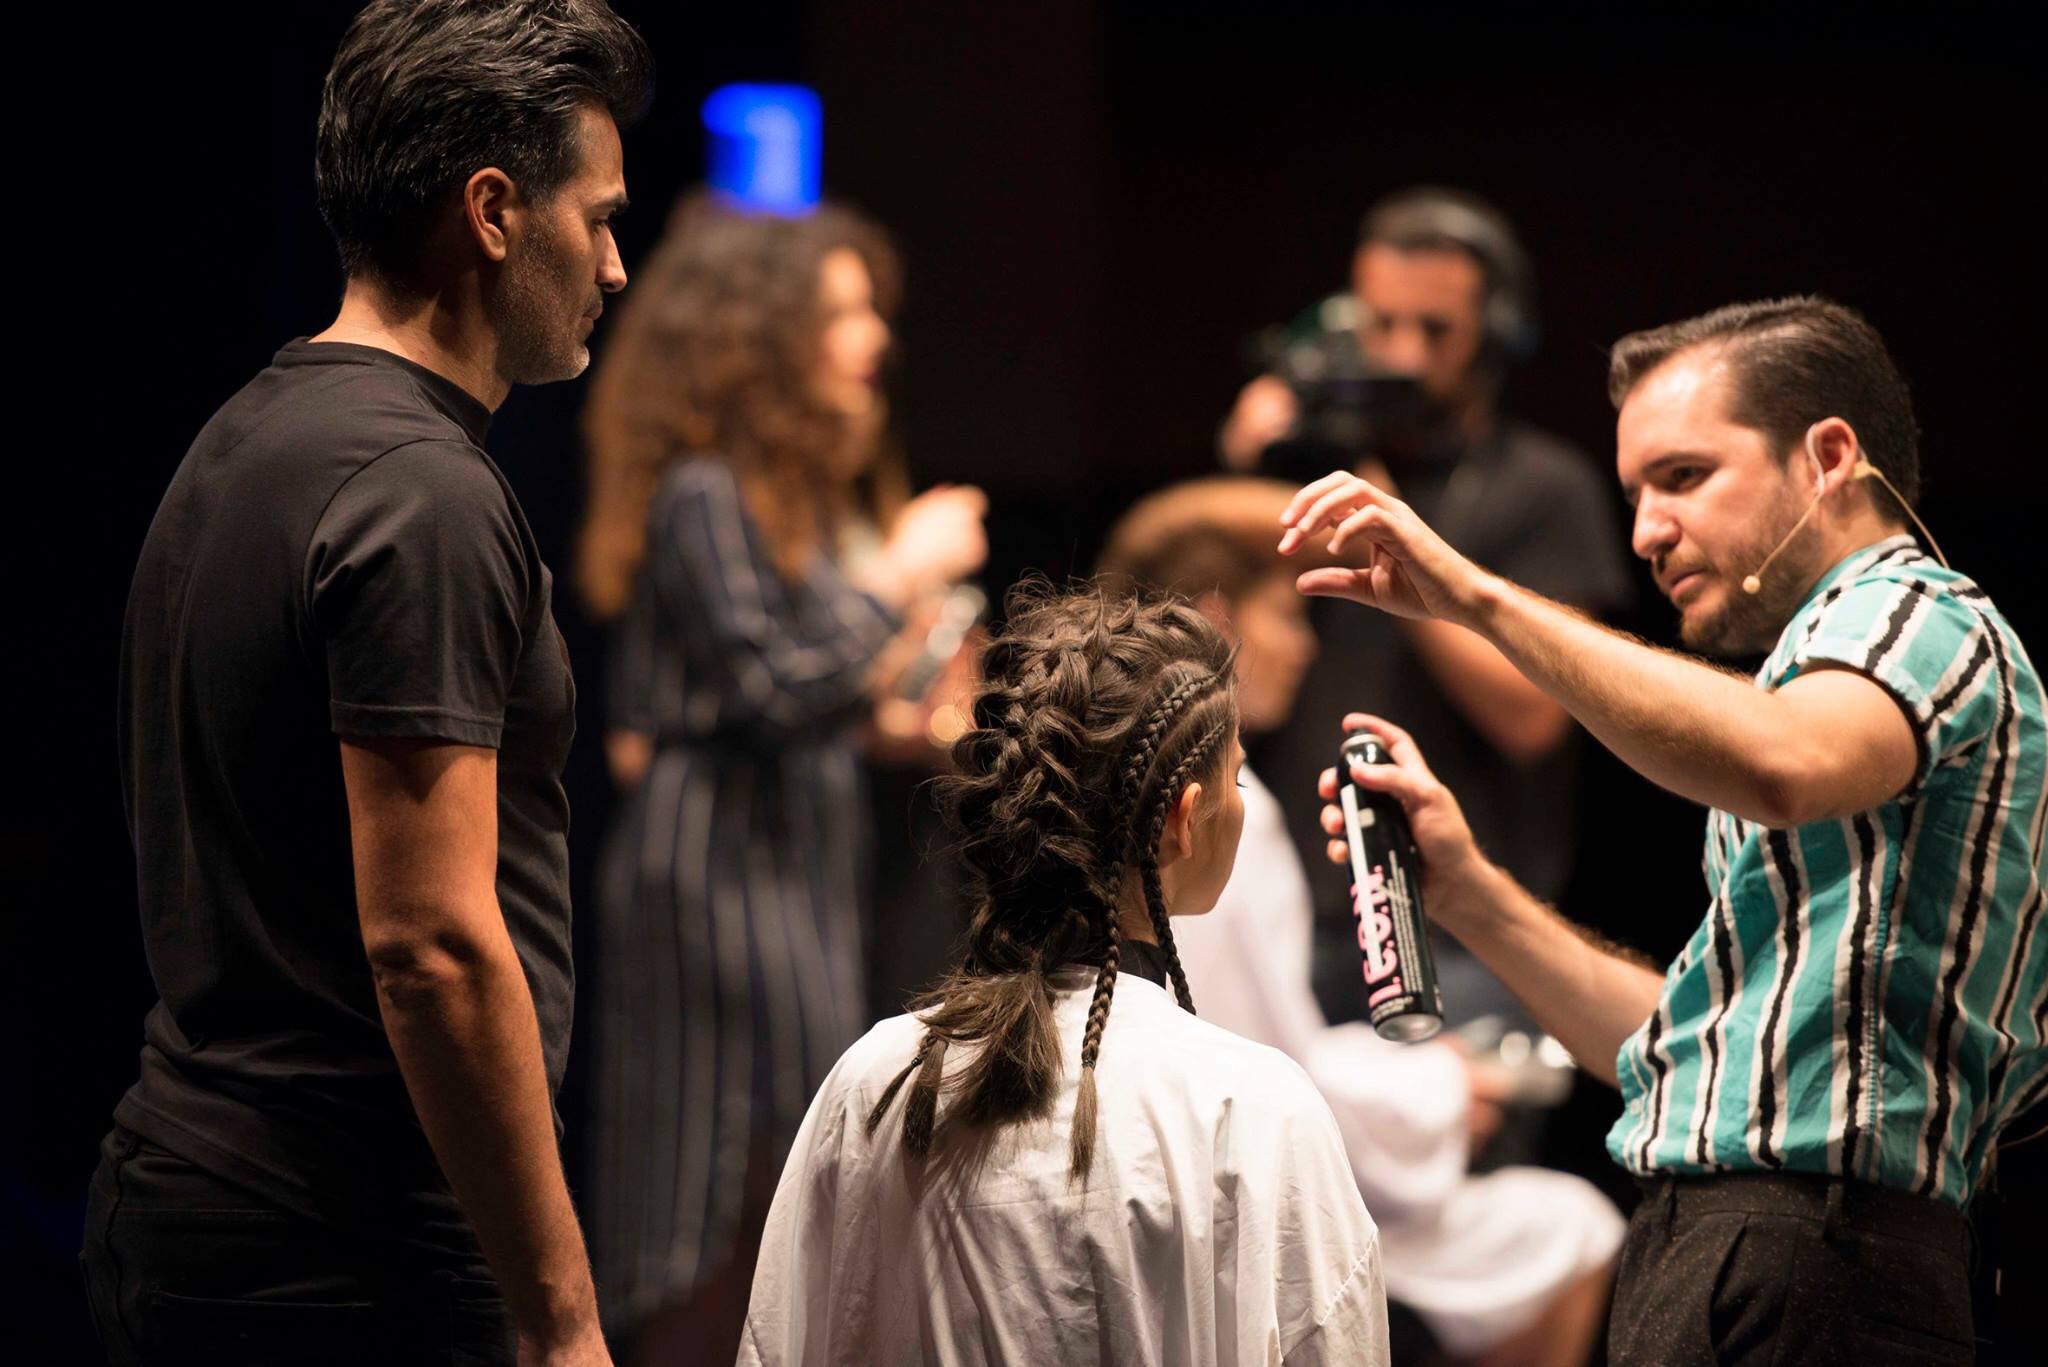 Los peluqueros más influyentes del mundo confluyen en ‘Live’, un evento que llega a Gran Canaria de la mano de Moda Cálida